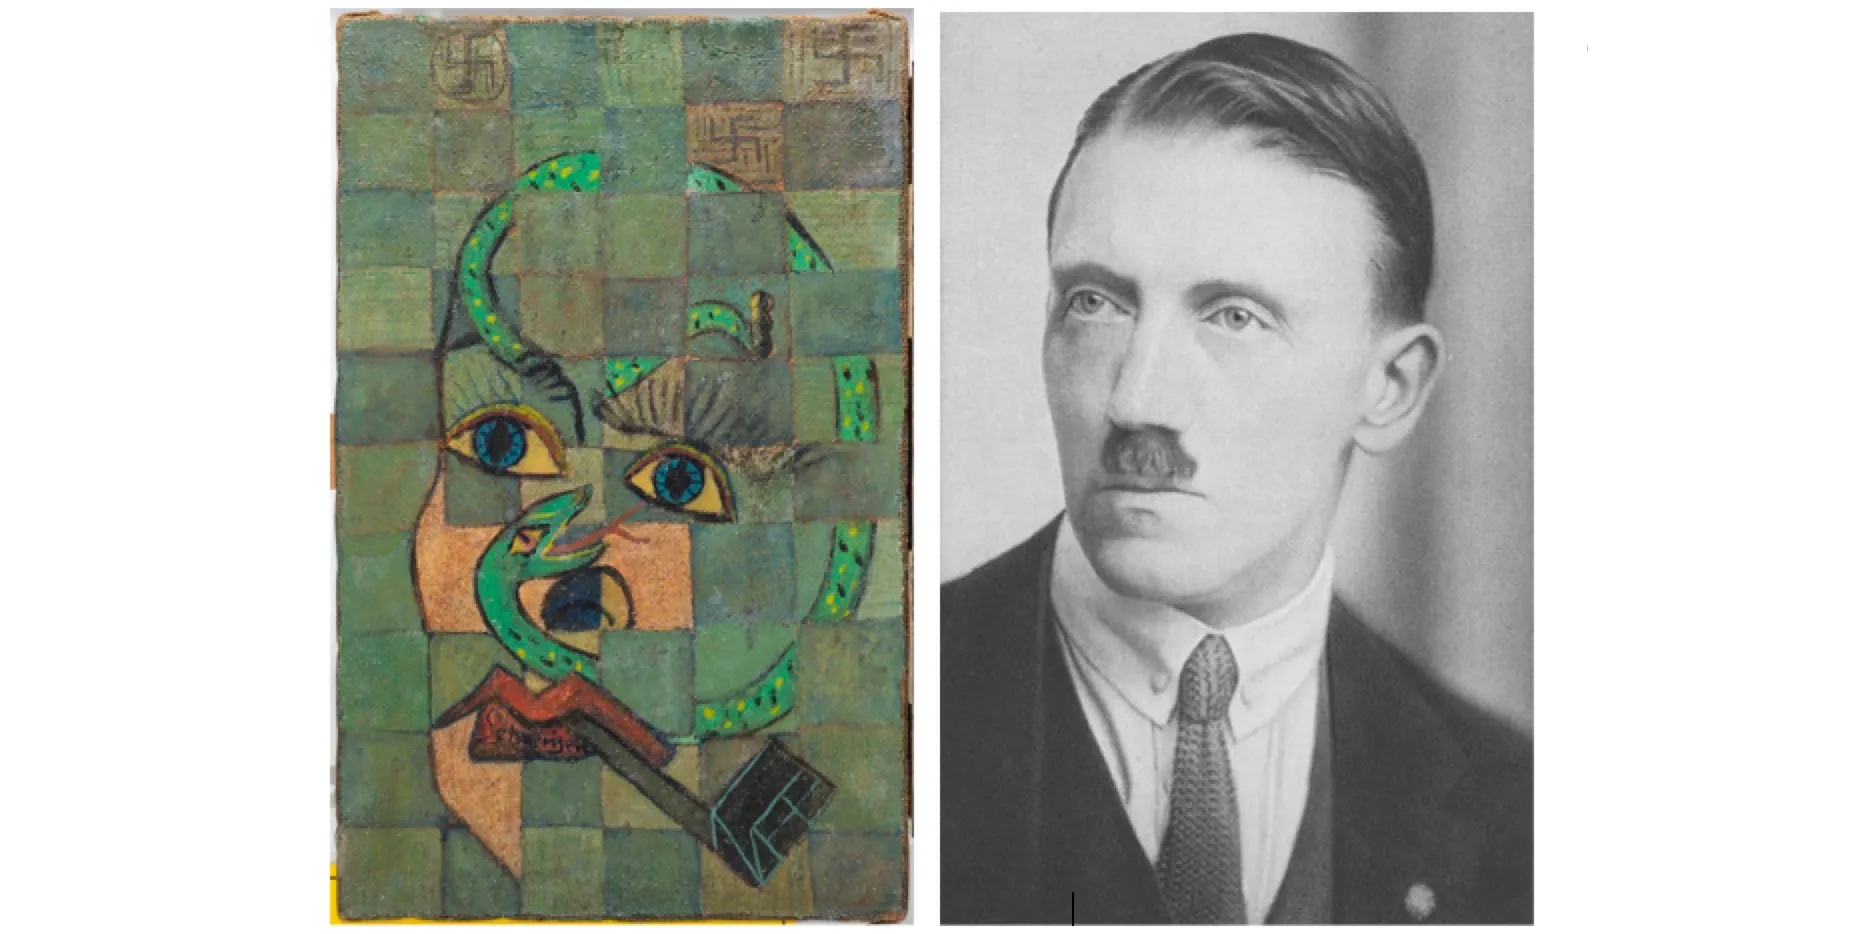 È un dipinto di Picasso? E nasconde un ritratto di Adolf Hitler?